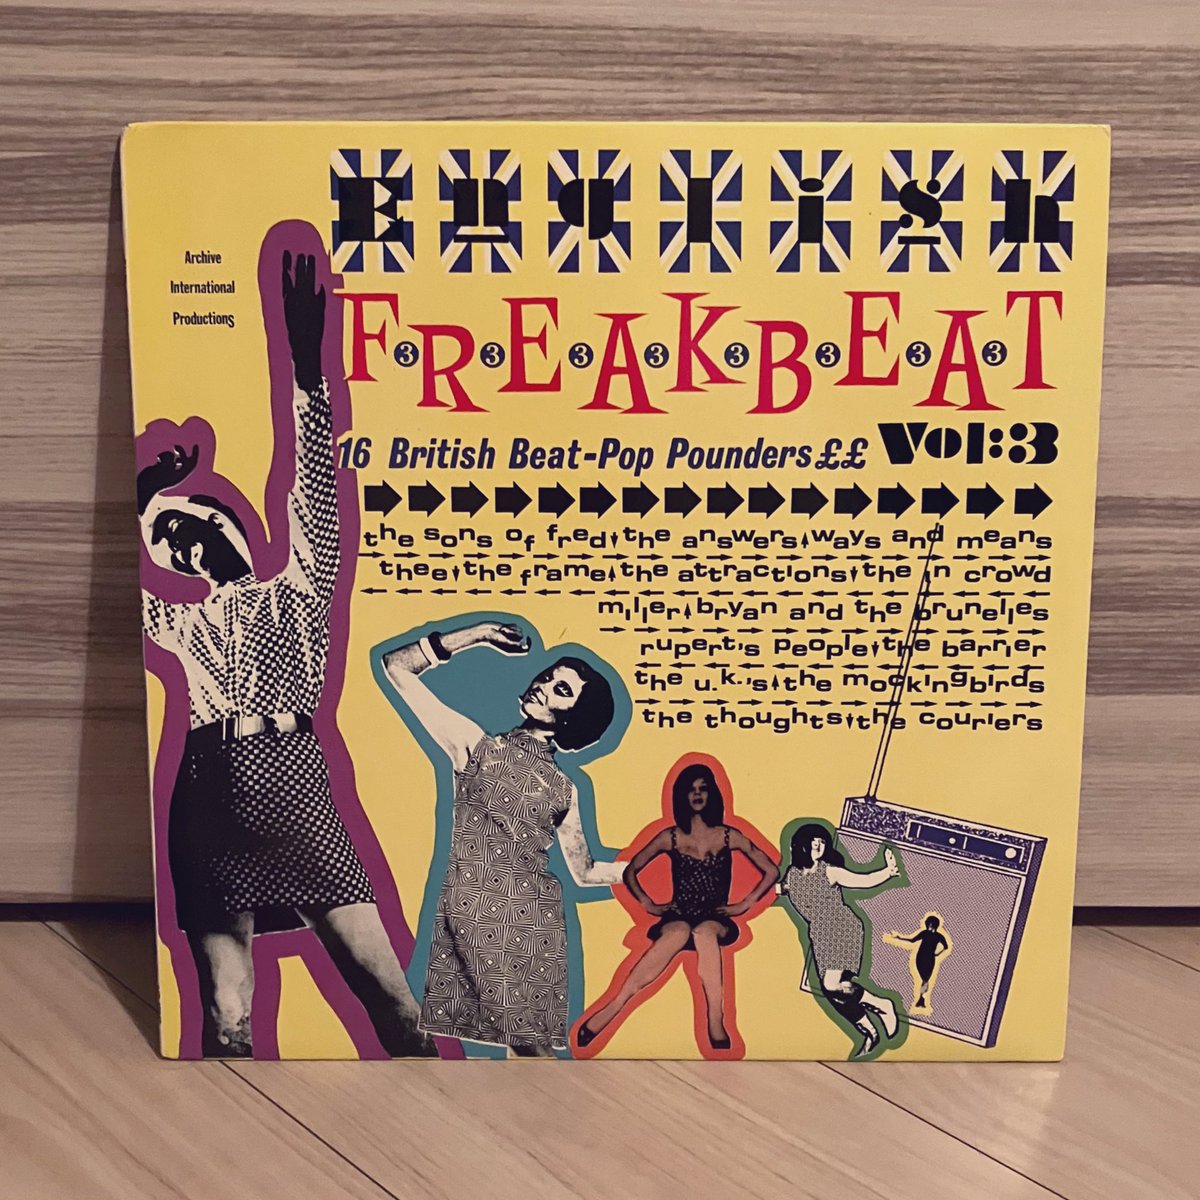 今夜の一枚
「English Freakbeat Vol 3」
過去リリースされた中でトップに入る素晴らしいUKビート集の第3巻。
第3巻はポップ系で通常はあまり縁が無いのですが、流石EFB、単なるポップビートでは有りません‼️
CDのボートラ目玉はKinksの前身バンドのRavensを何と3曲も収録しています😲
#60sビート